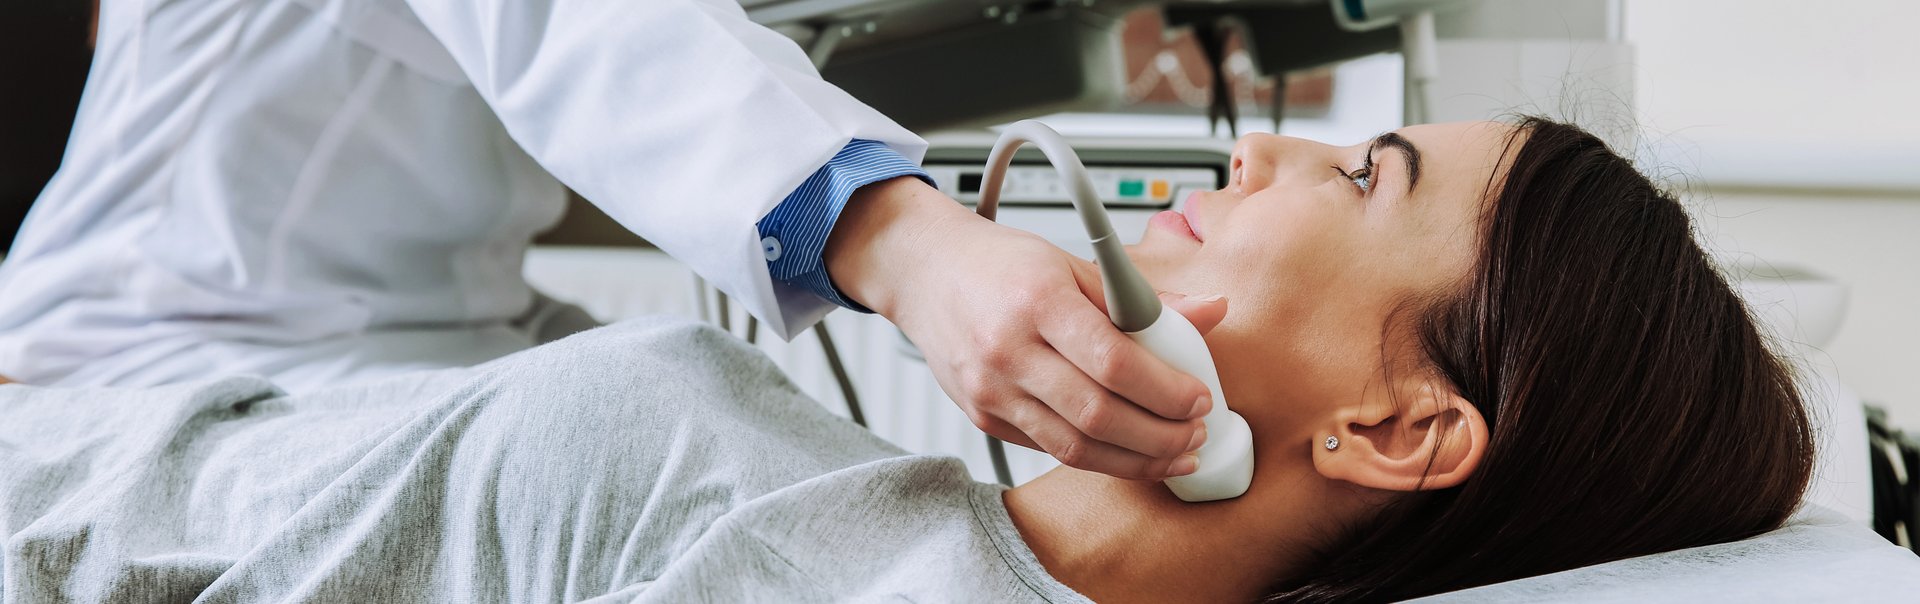 Ein Arzt hält ein Echogerät zweck Tumorbekämpfung an den Hals einer jungen Patientin.